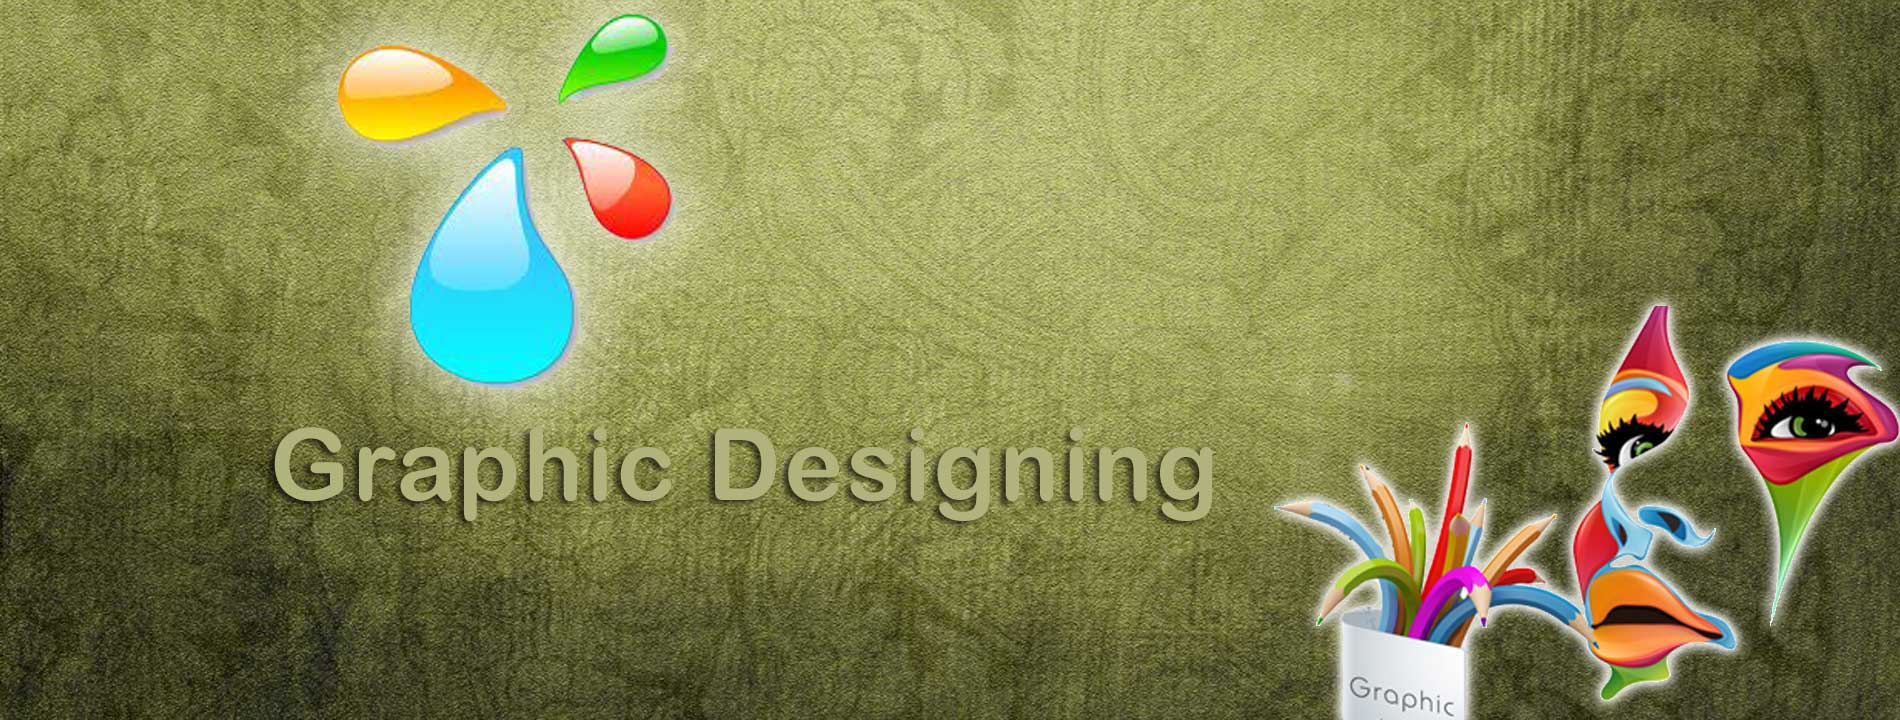 creative graphic designer